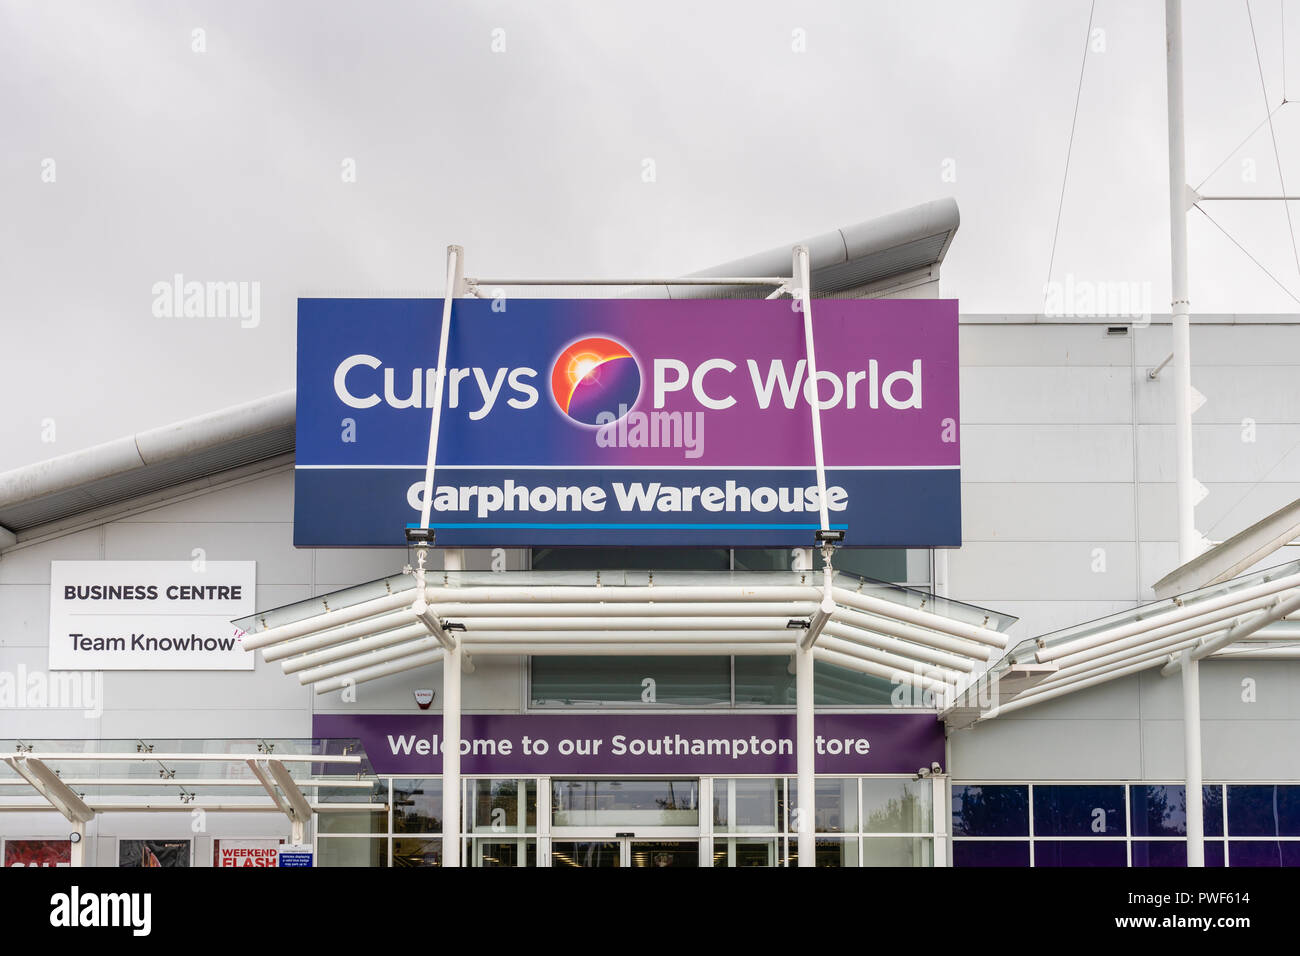 Façade d'un magasin de PC World Currys à Southampton, England, UK Banque D'Images